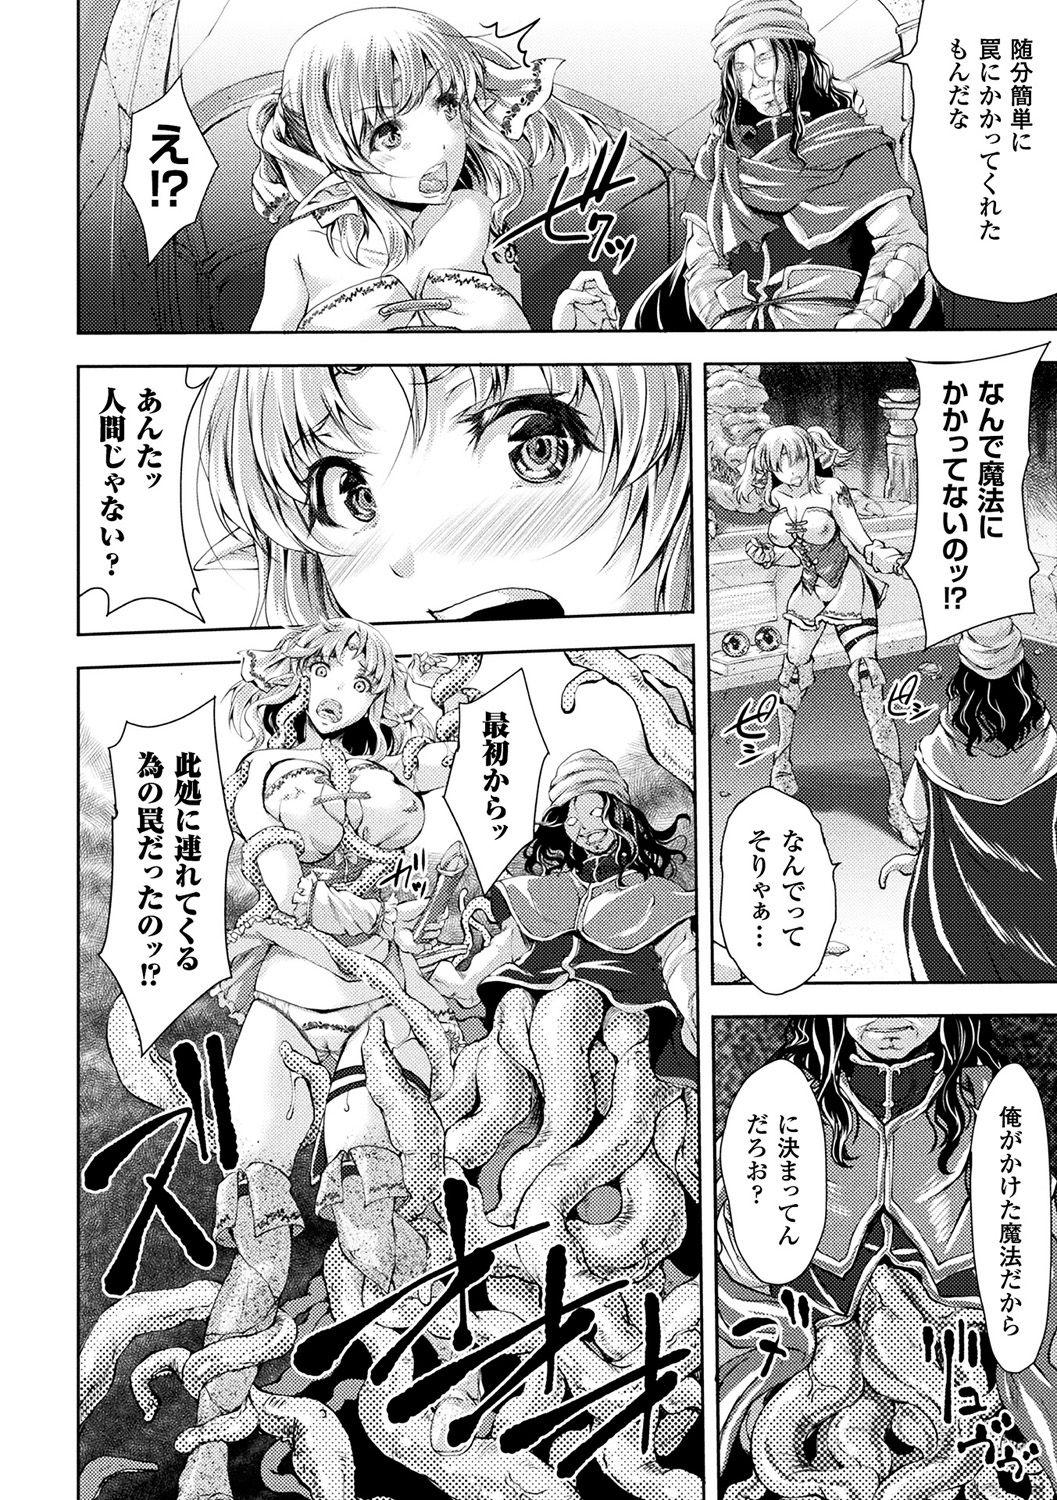 [Anthology] Bessatsu Comic Unreal Sekka END ~Zetsubou no Naka de Sekizou e to Kaerareru Shoujo-tachi~ Vol. 2 [Digital] 22